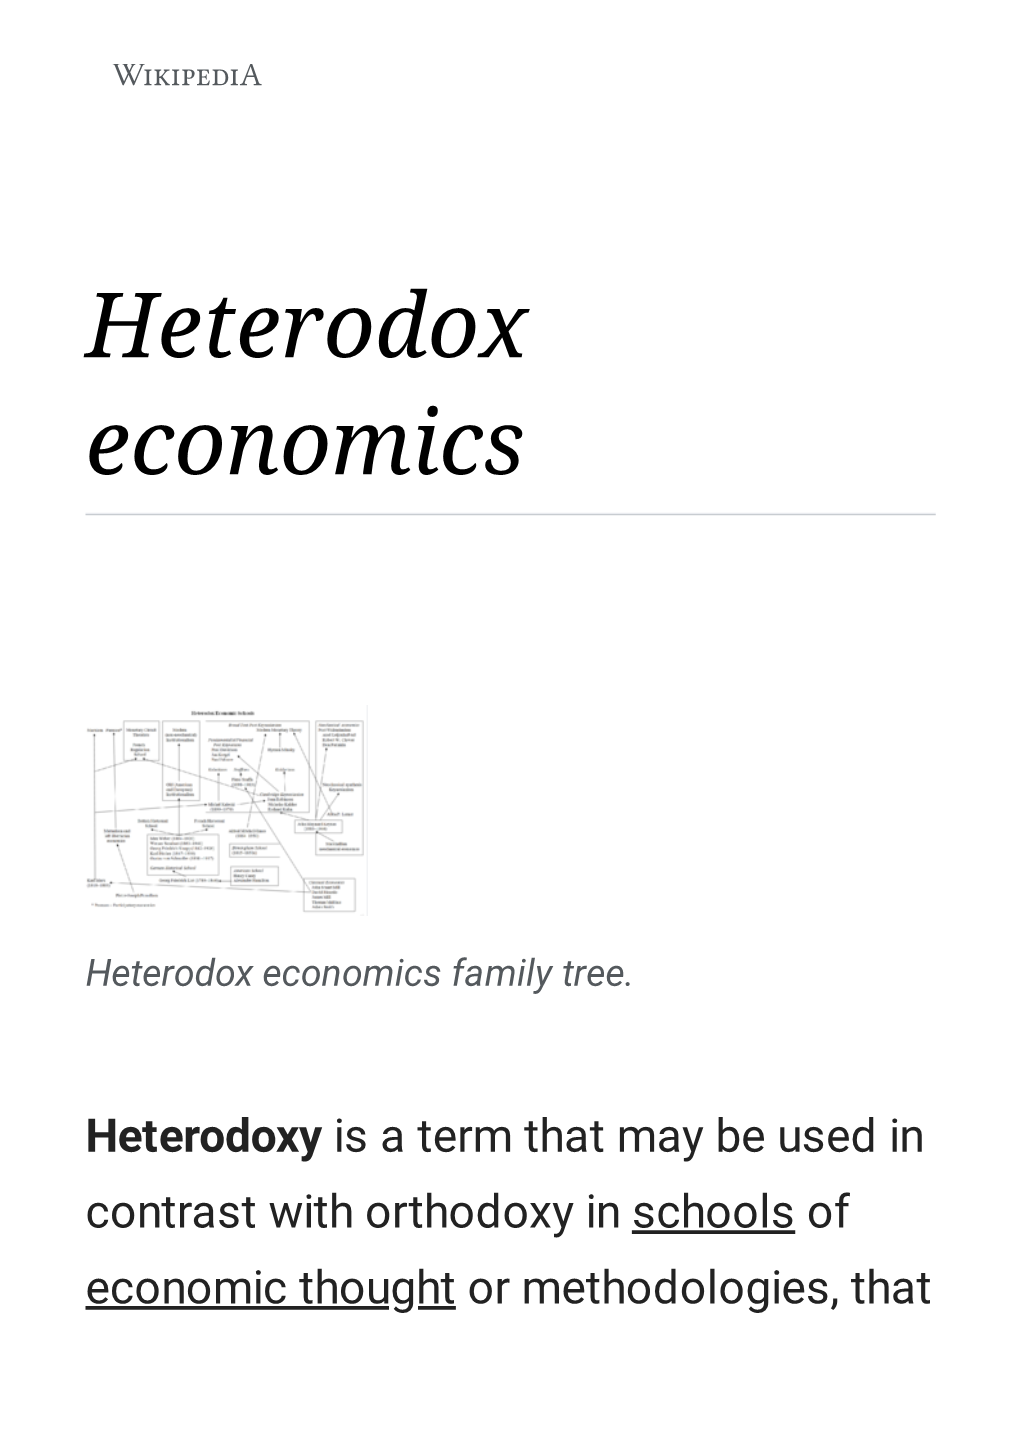 Heterodox Economics